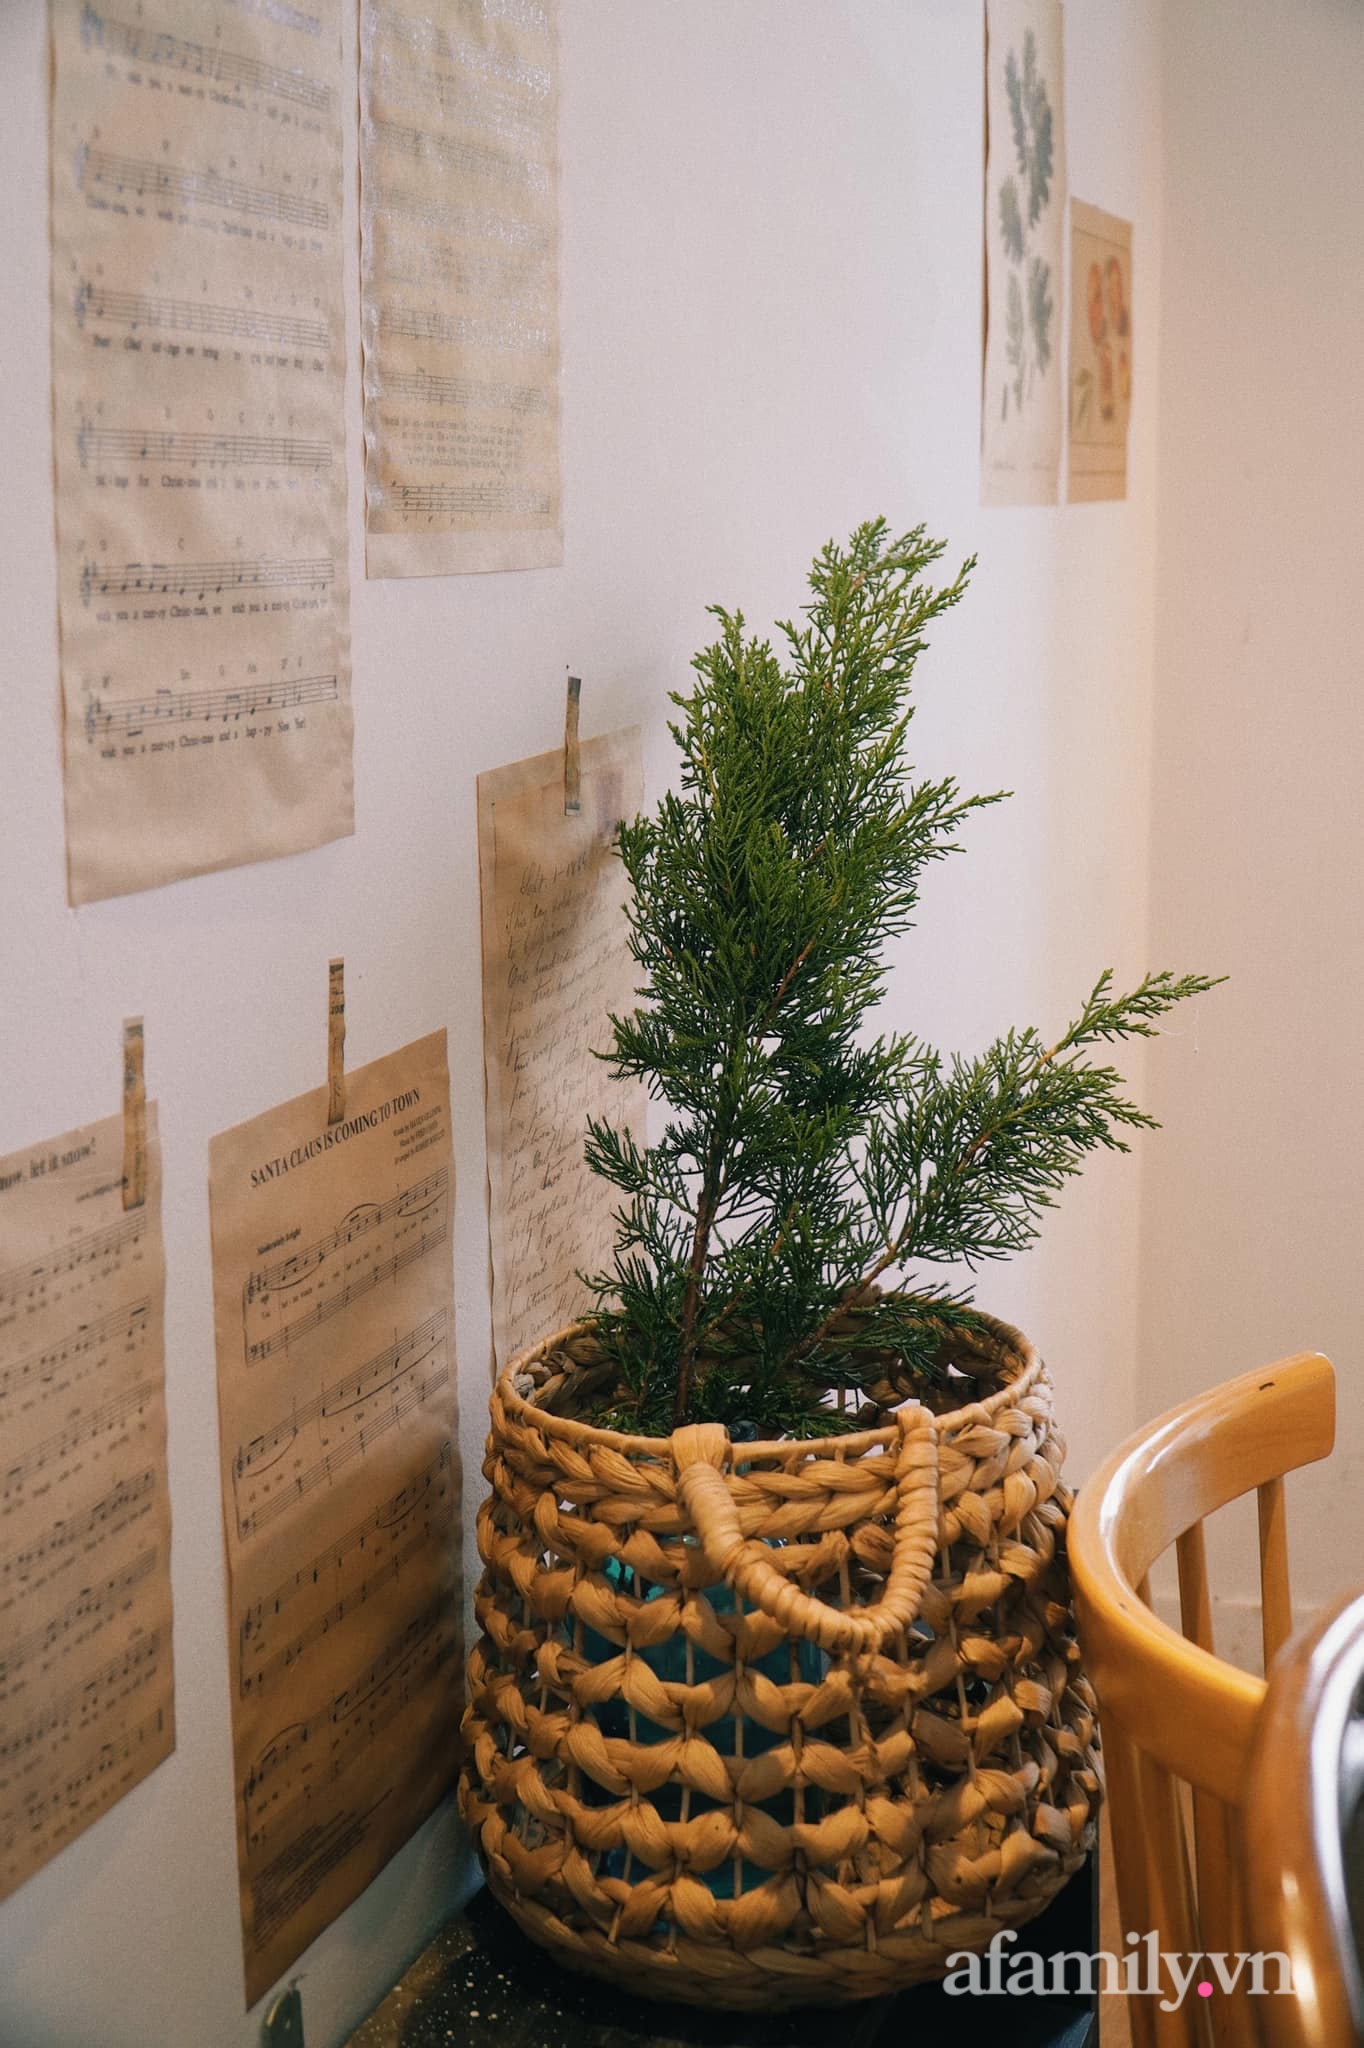 Căn nhà phố Hà Nội dịu dàng hương Giáng sinh nhờ decor bằng nguyên liệu sẵn có trong bếp - Ảnh 21.